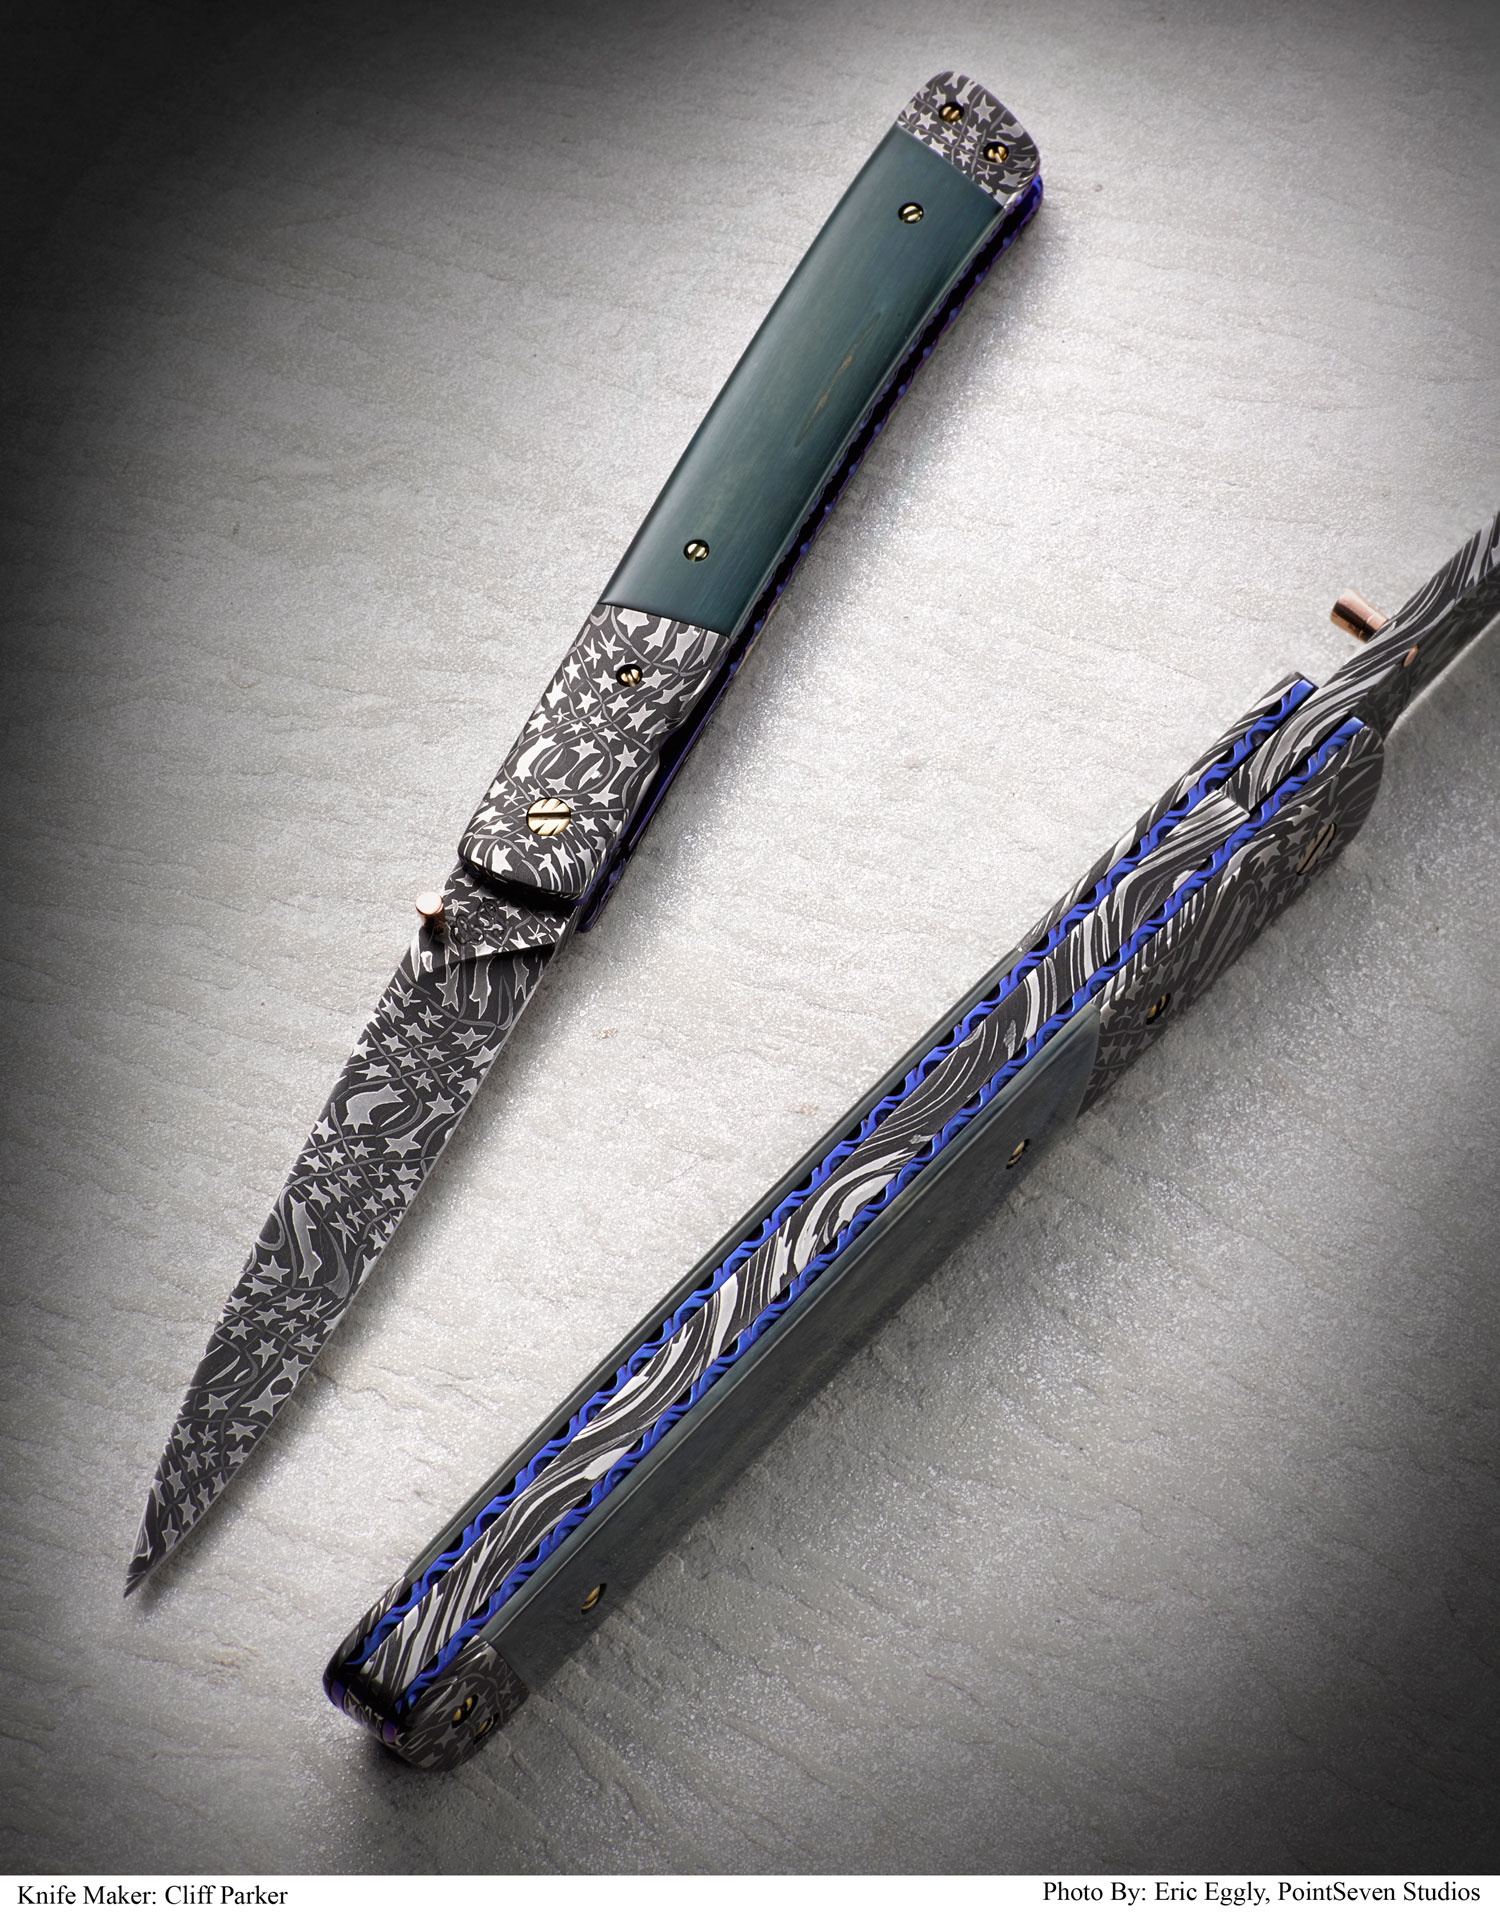 Cliff parker custom knife